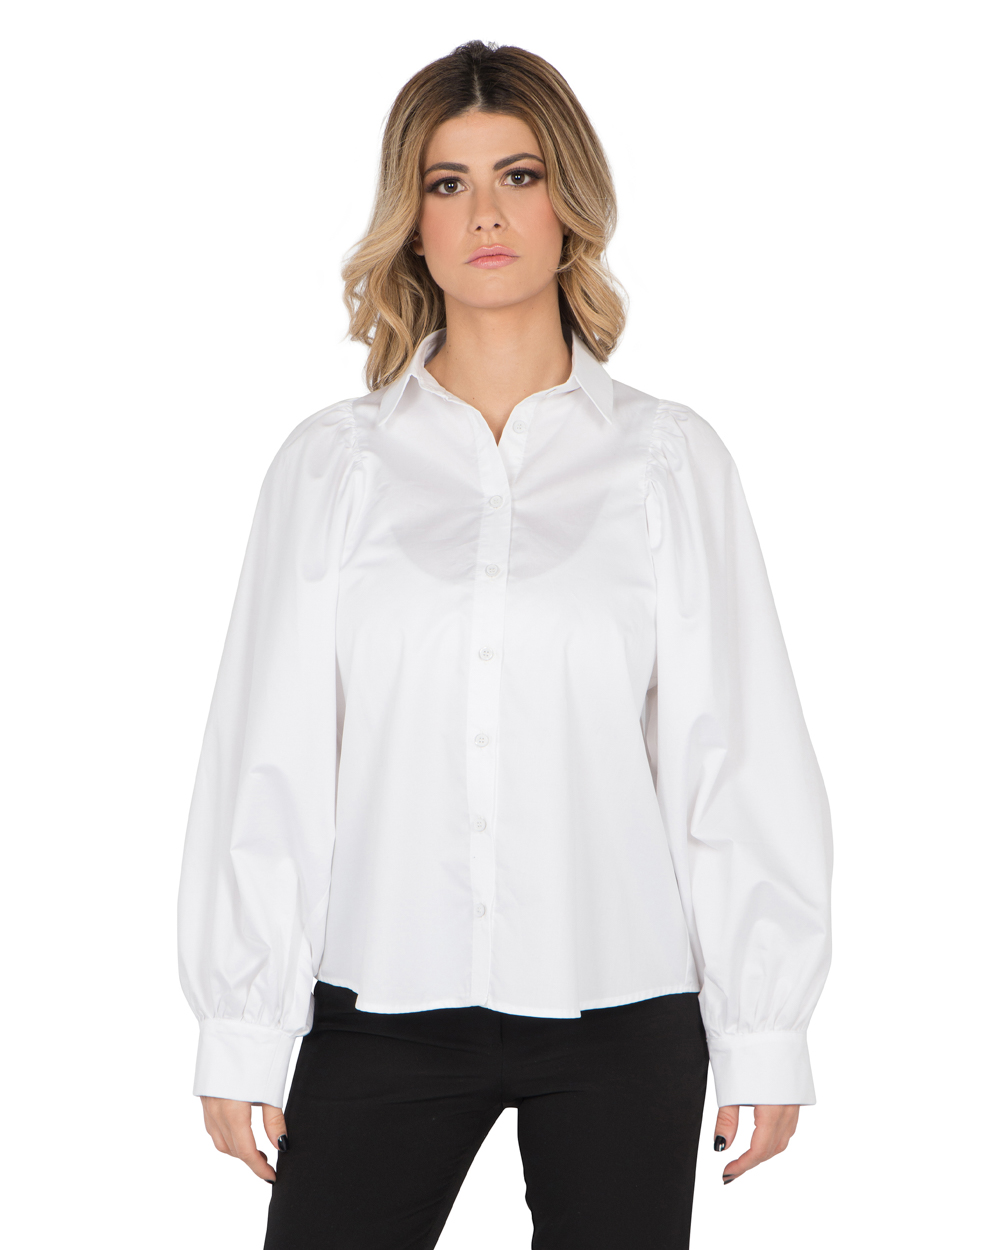 Λευκό πουκάμισο με φουσκωτά μανίκια